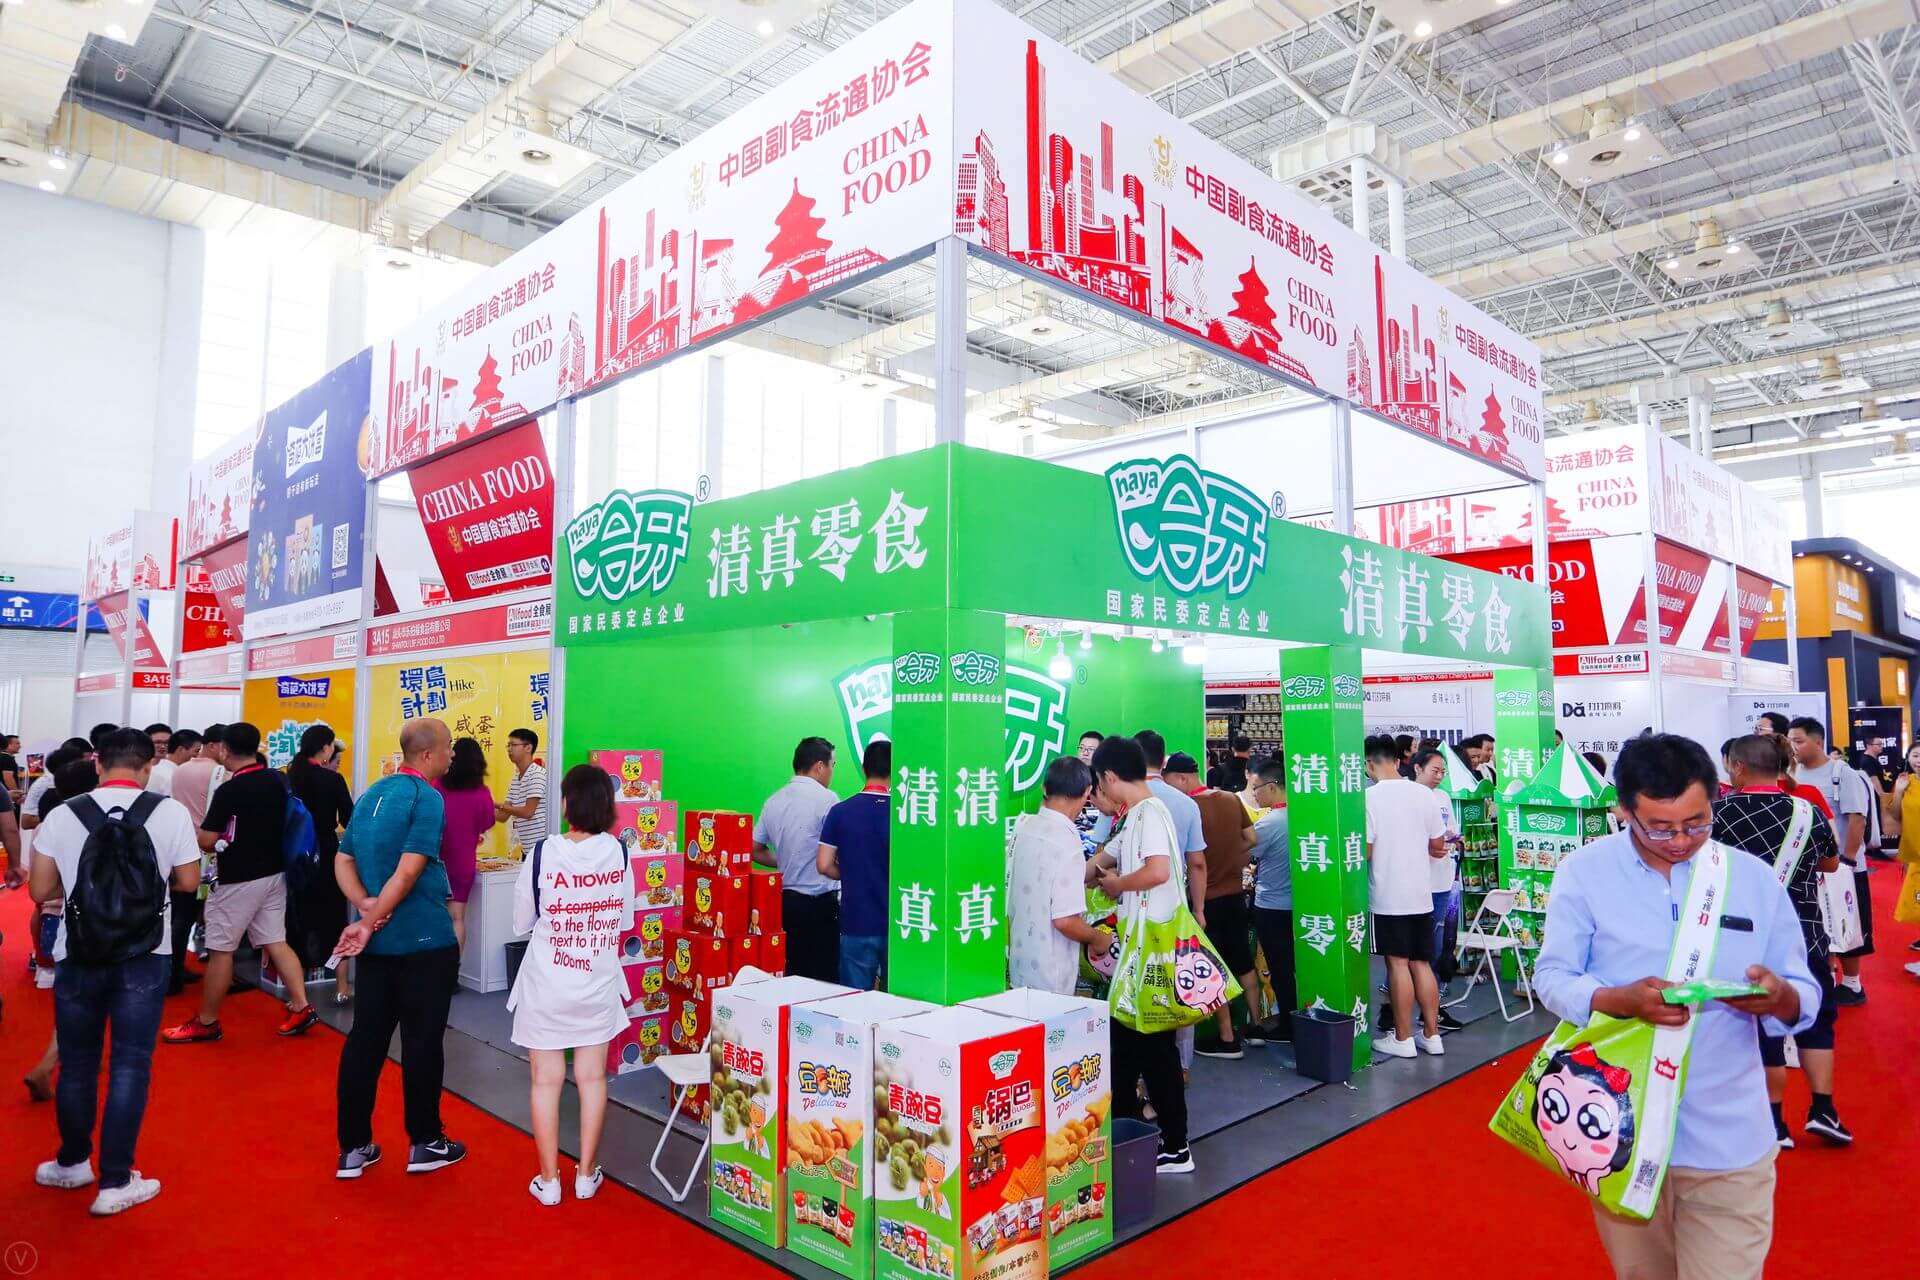 Exhibition in China 2021 - offline marketing